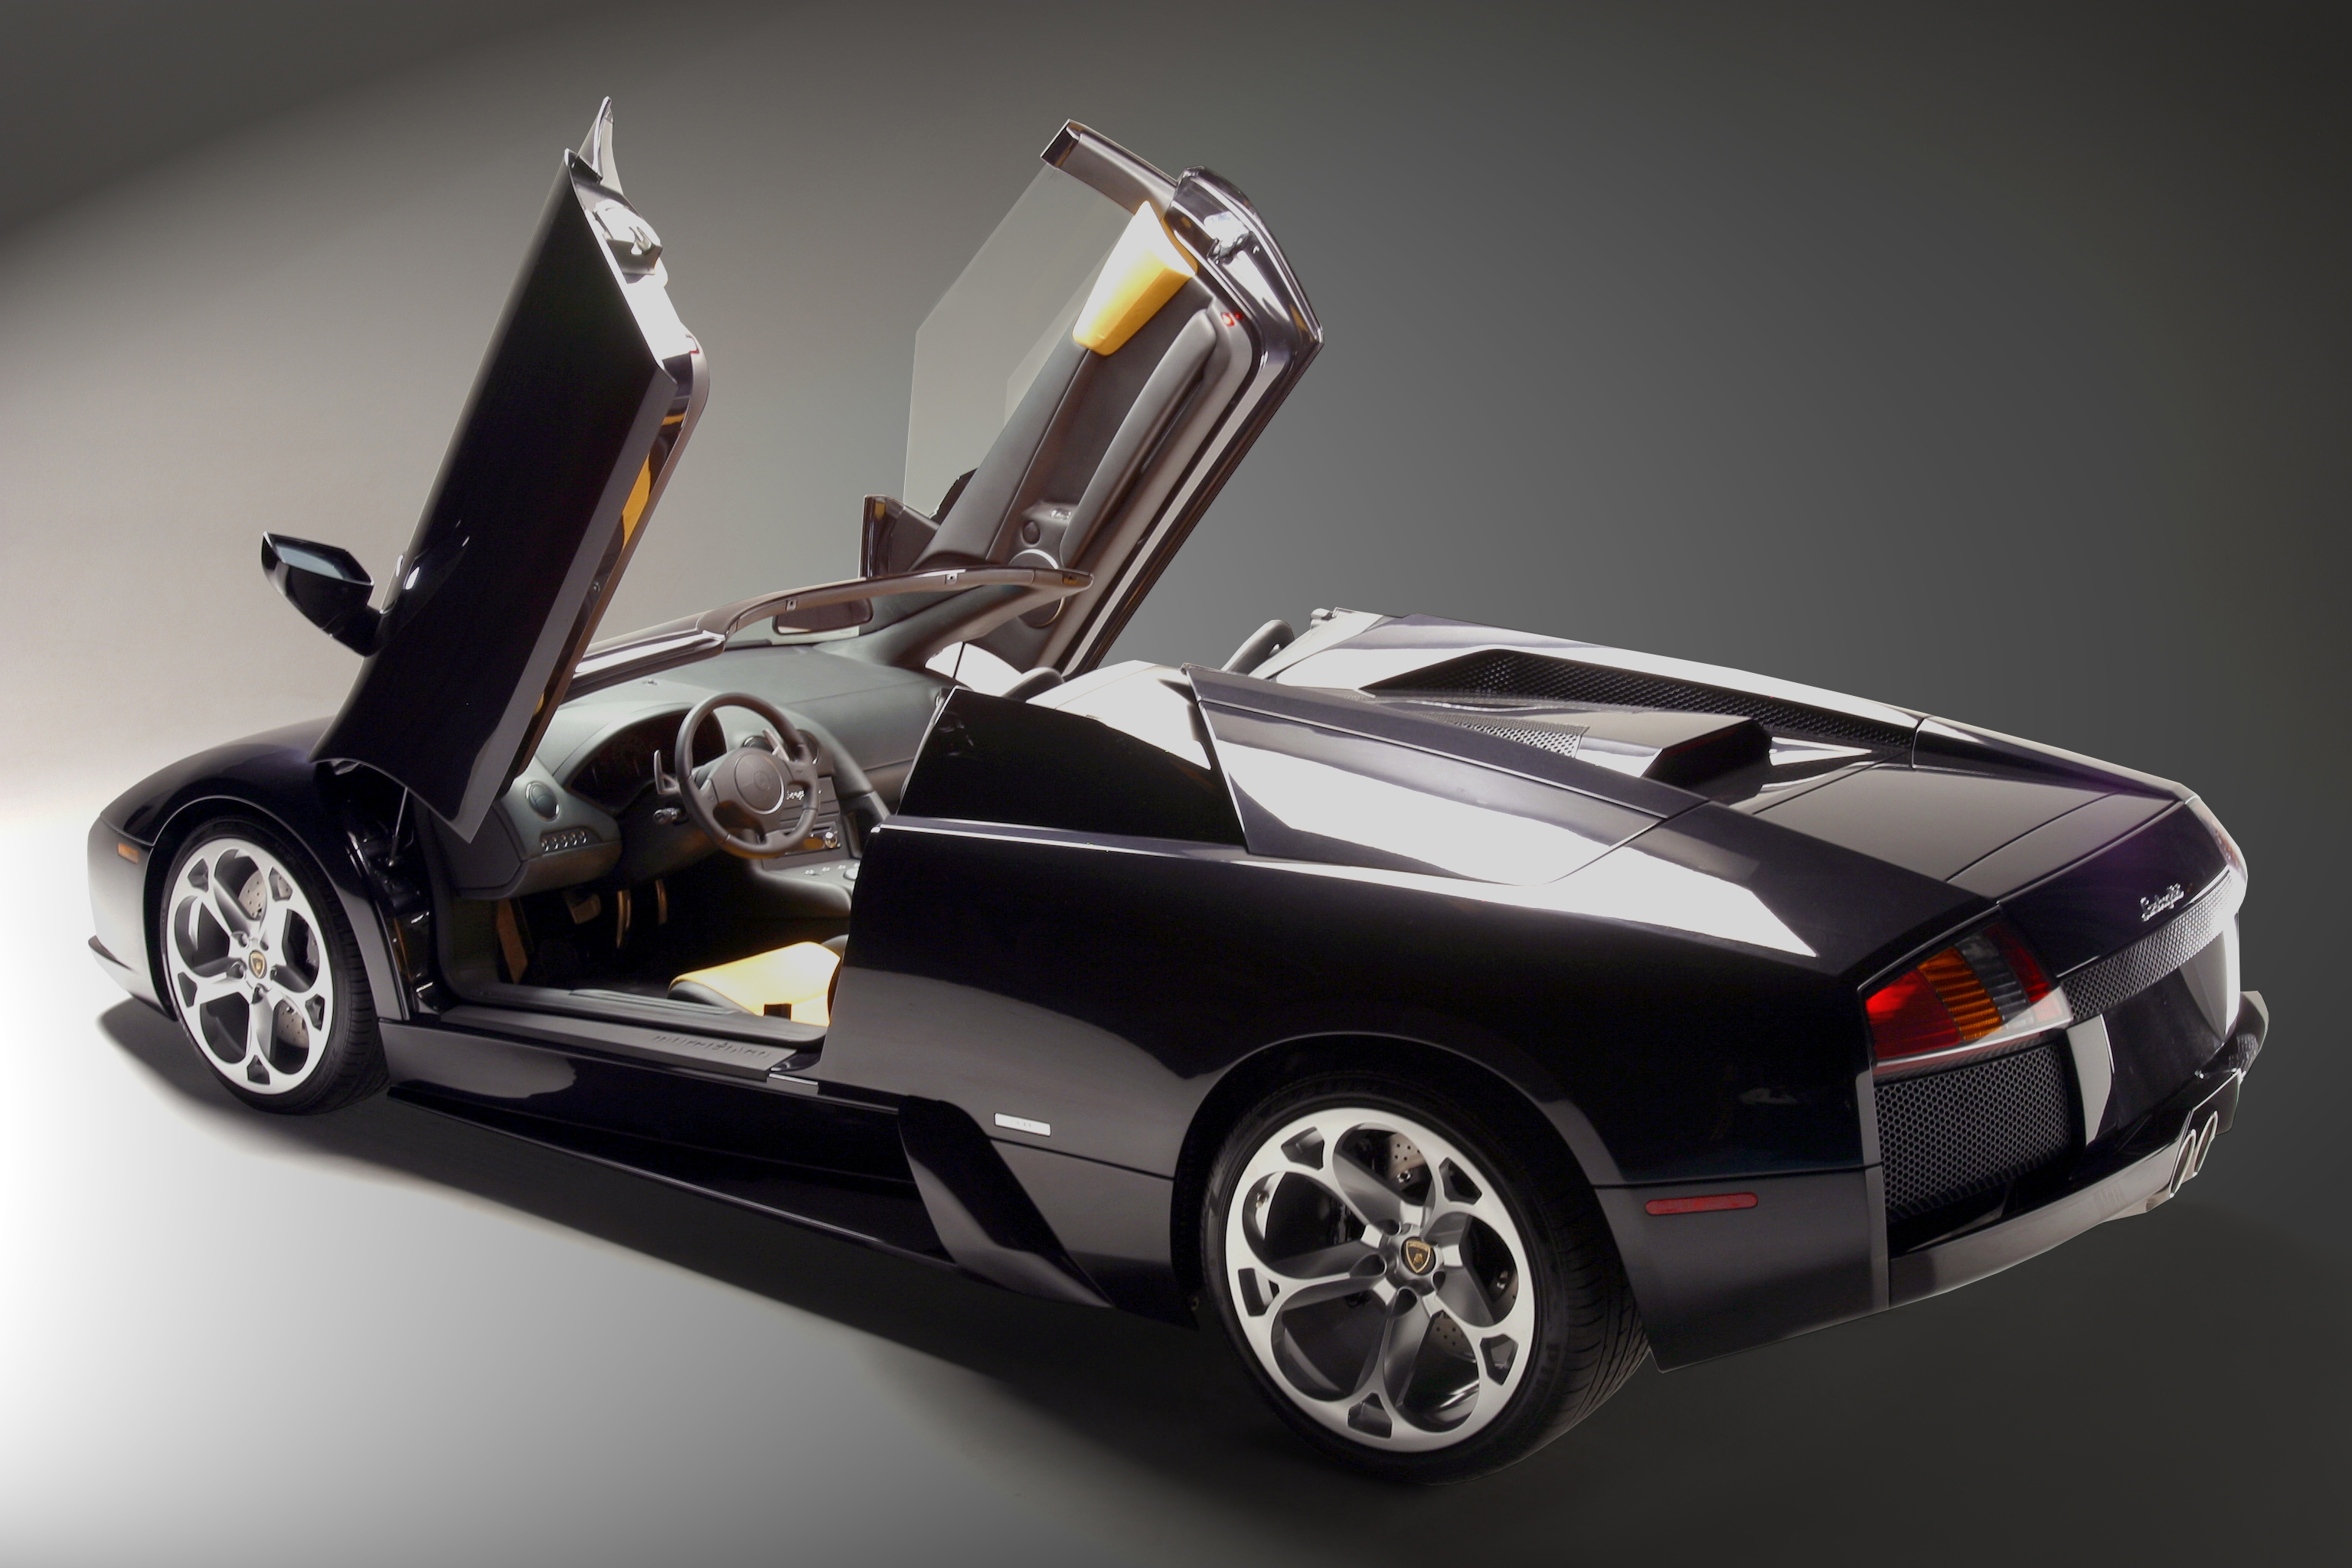 автомобили, транспортные средства, Lamborghini Murcielago - обои на рабочий стол